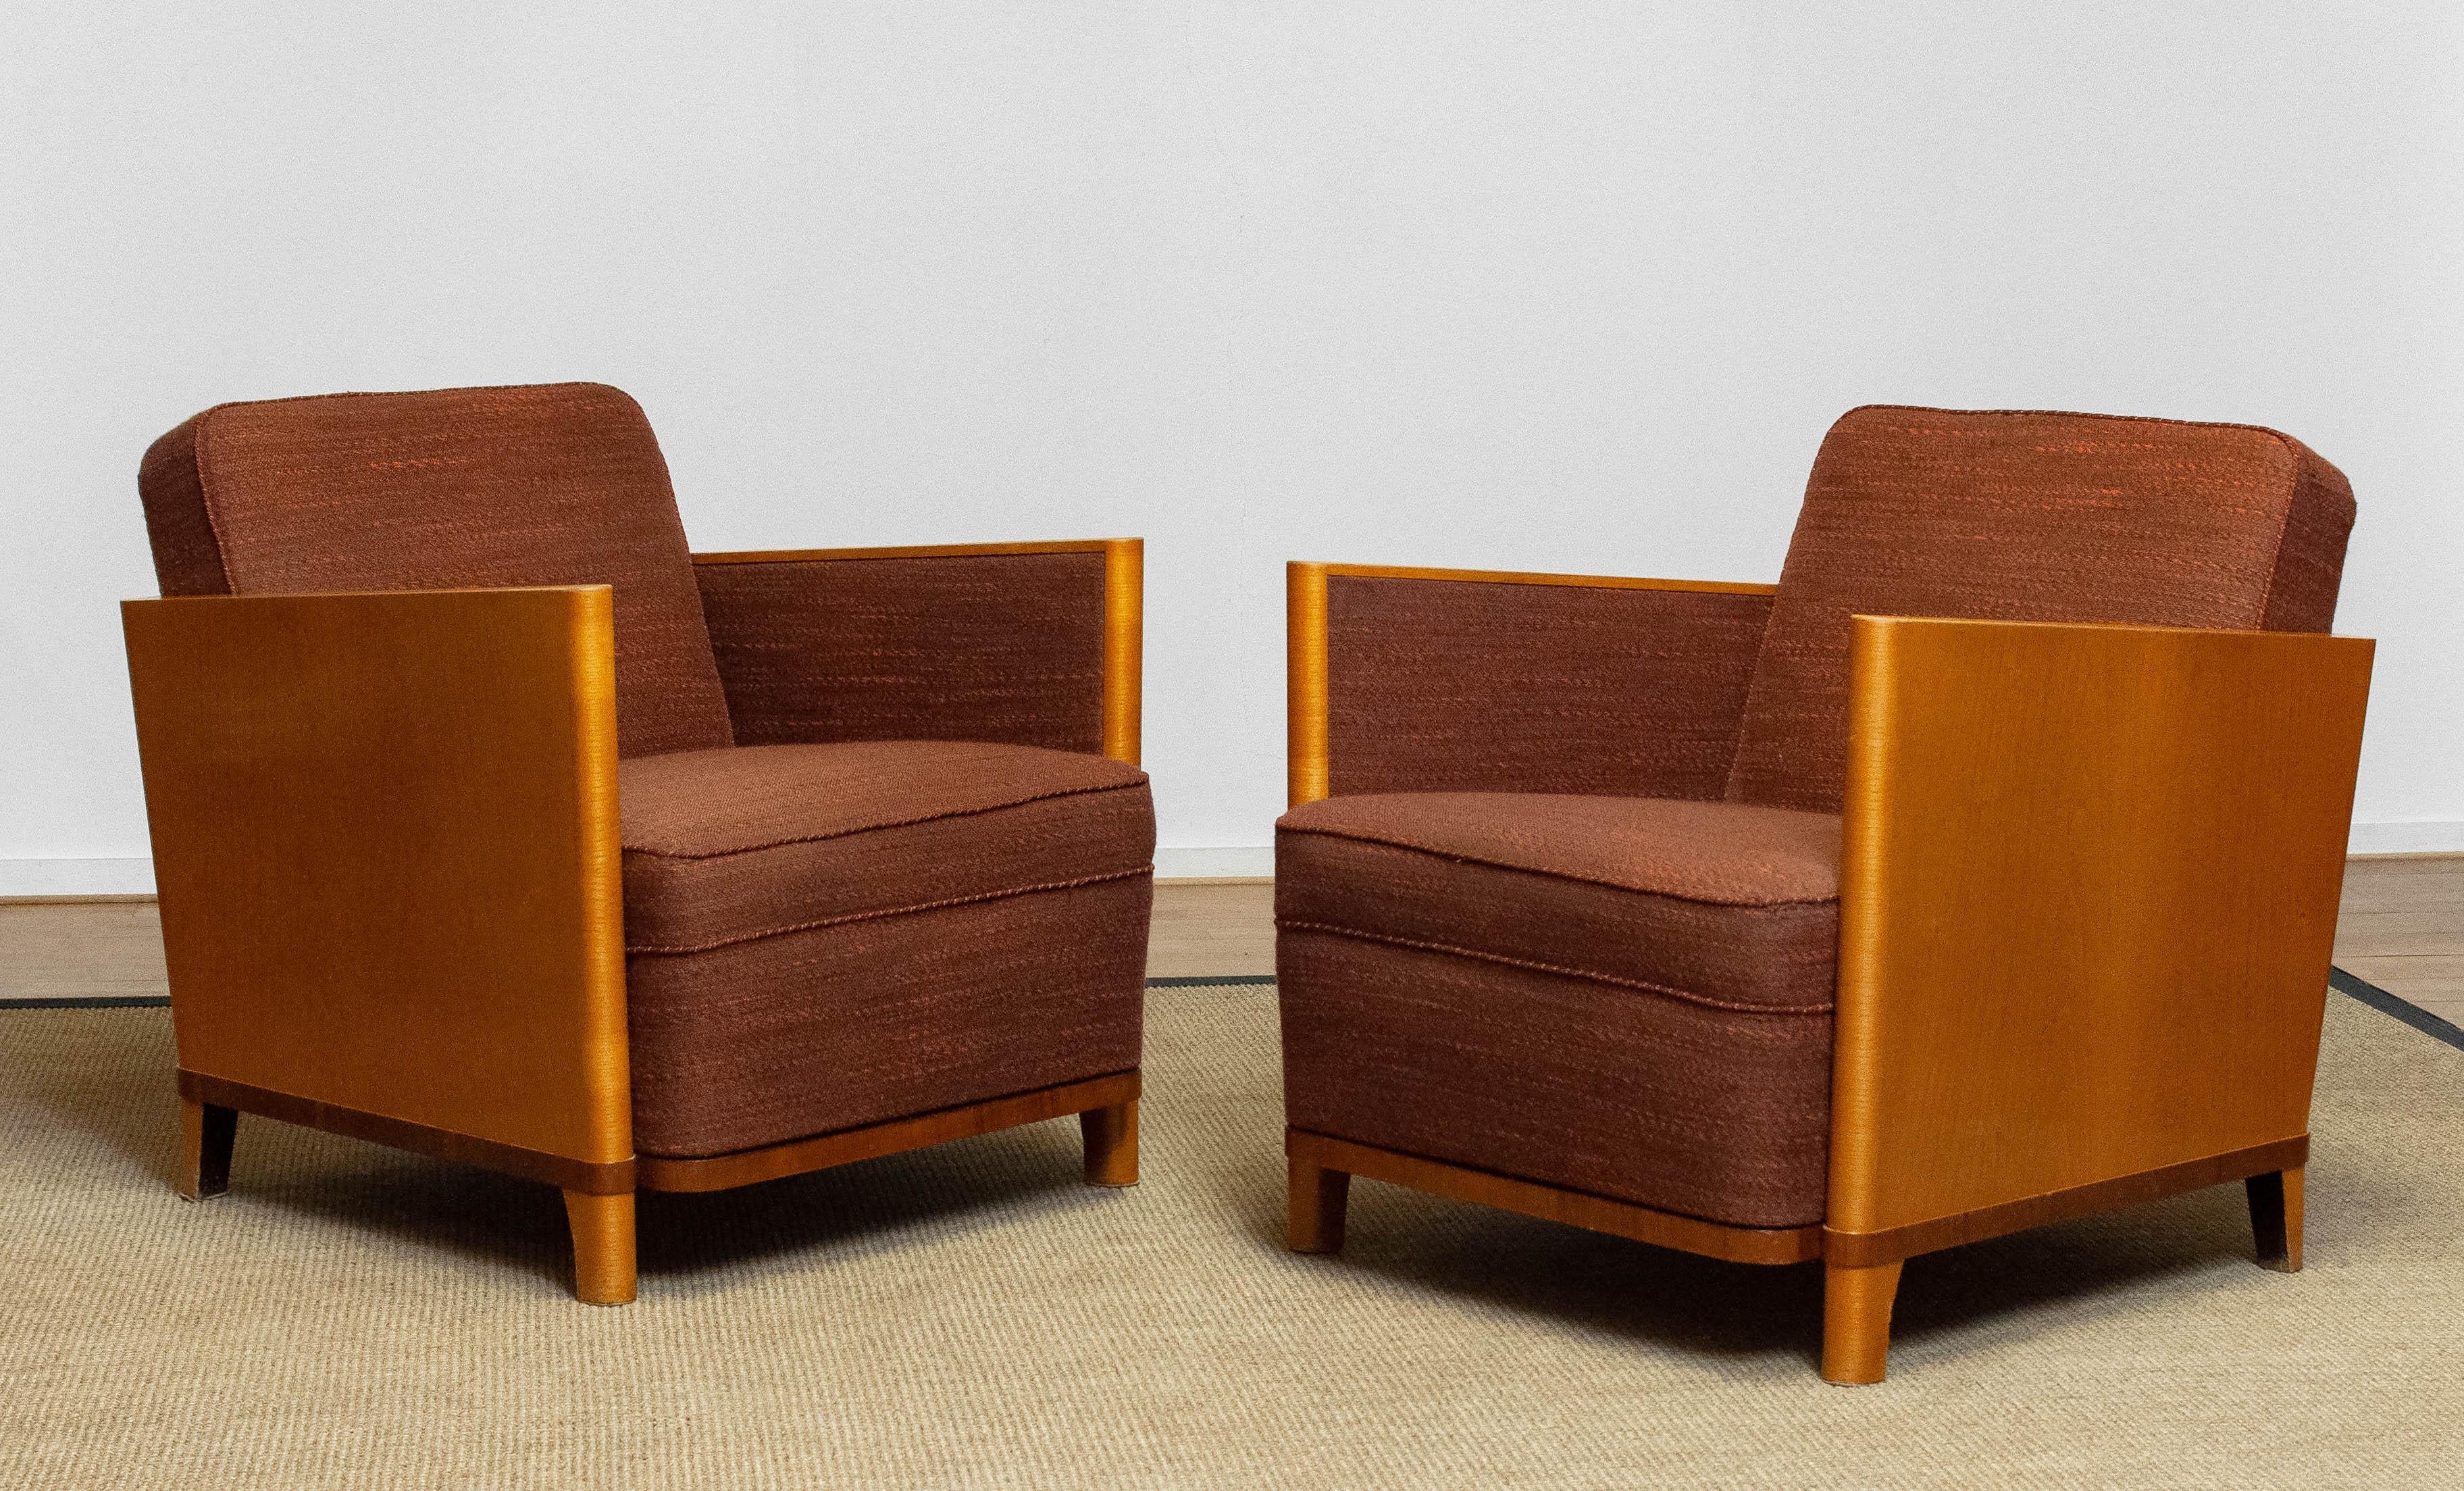 Schöner und seltener Satz von zwei Art Deco Club / Lounge Stühle mit Ulme furniert Rahmen gepolstert mit original dunkelbraunem Stoff Melle, die noch in sehr gutem und komfortablen Zustand ist. Auch die Federn und Bindungen sind bei beiden Stühlen